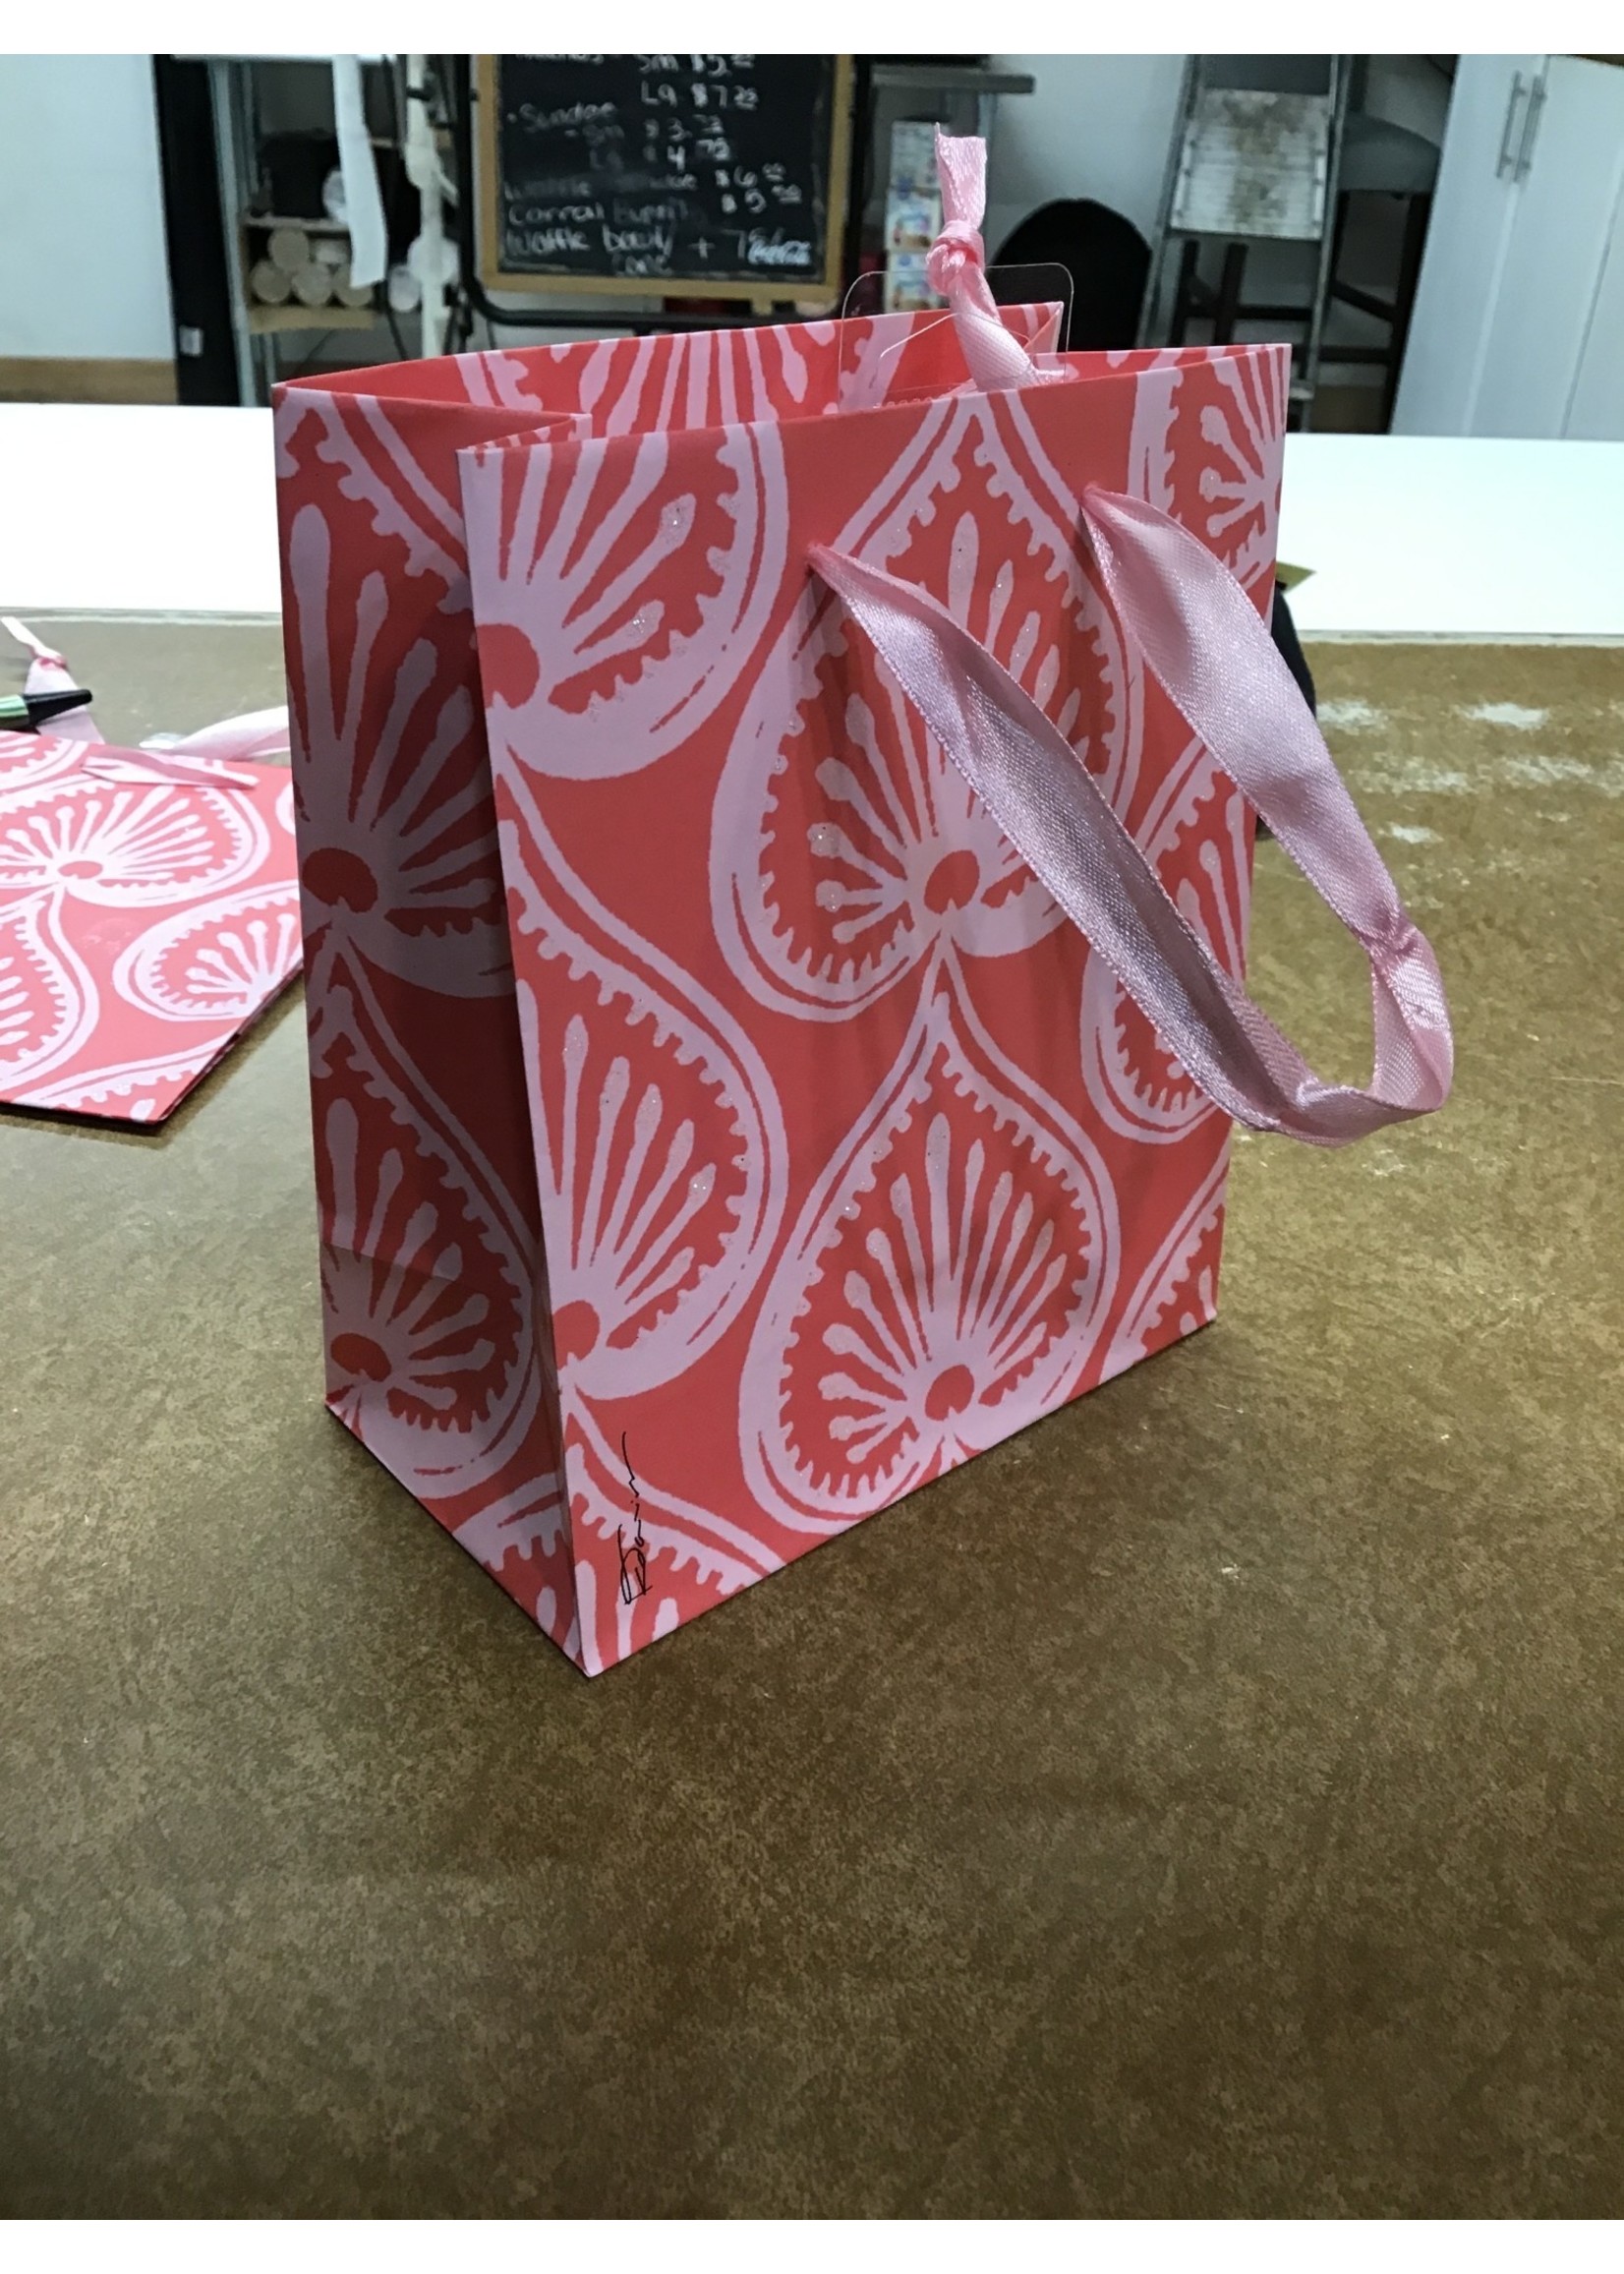 Petite Premium Bag Kathy Davis Pink Pattern